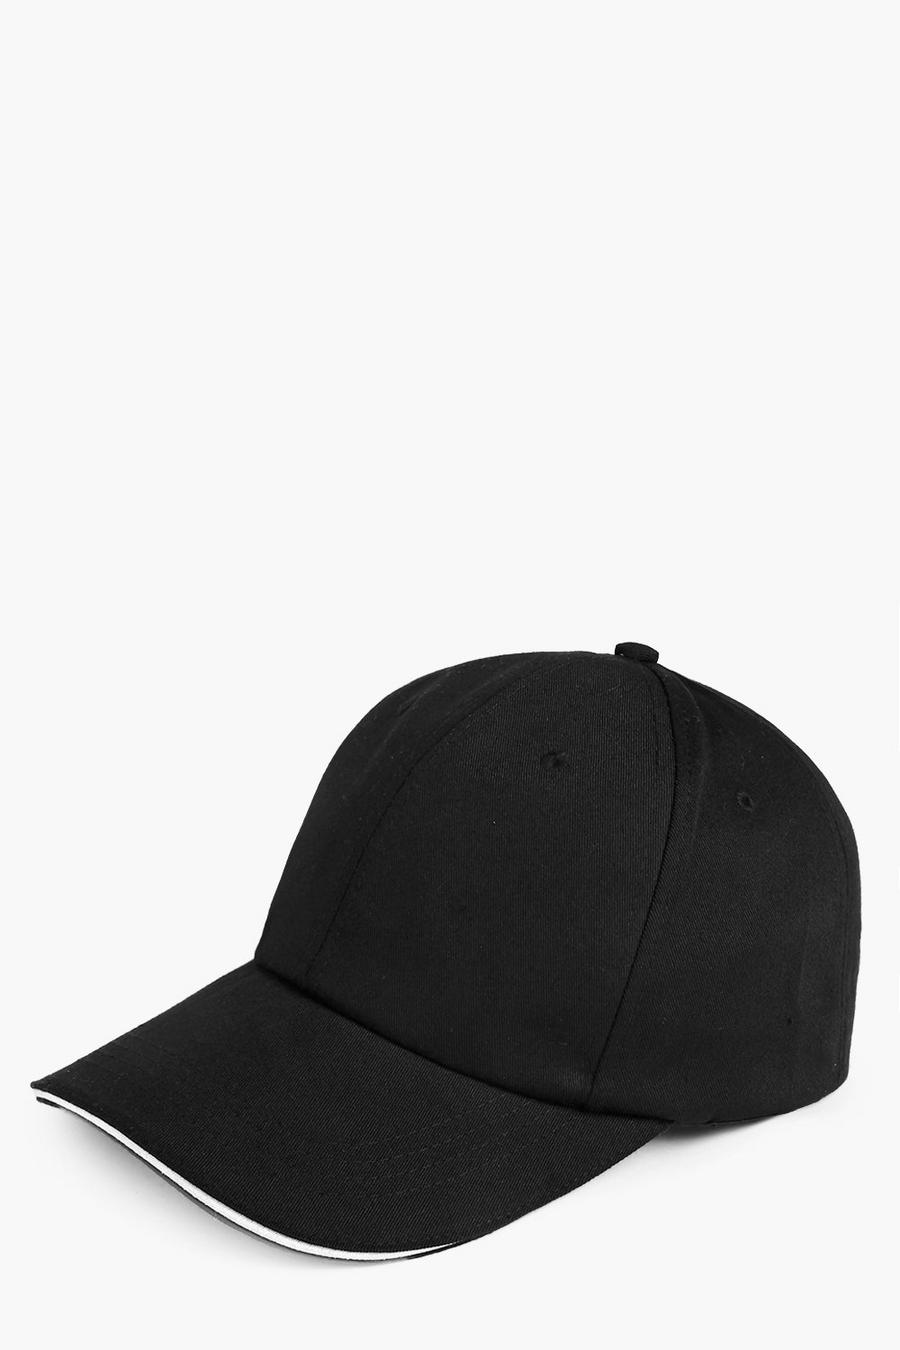 שחור black כובע ארין חלק